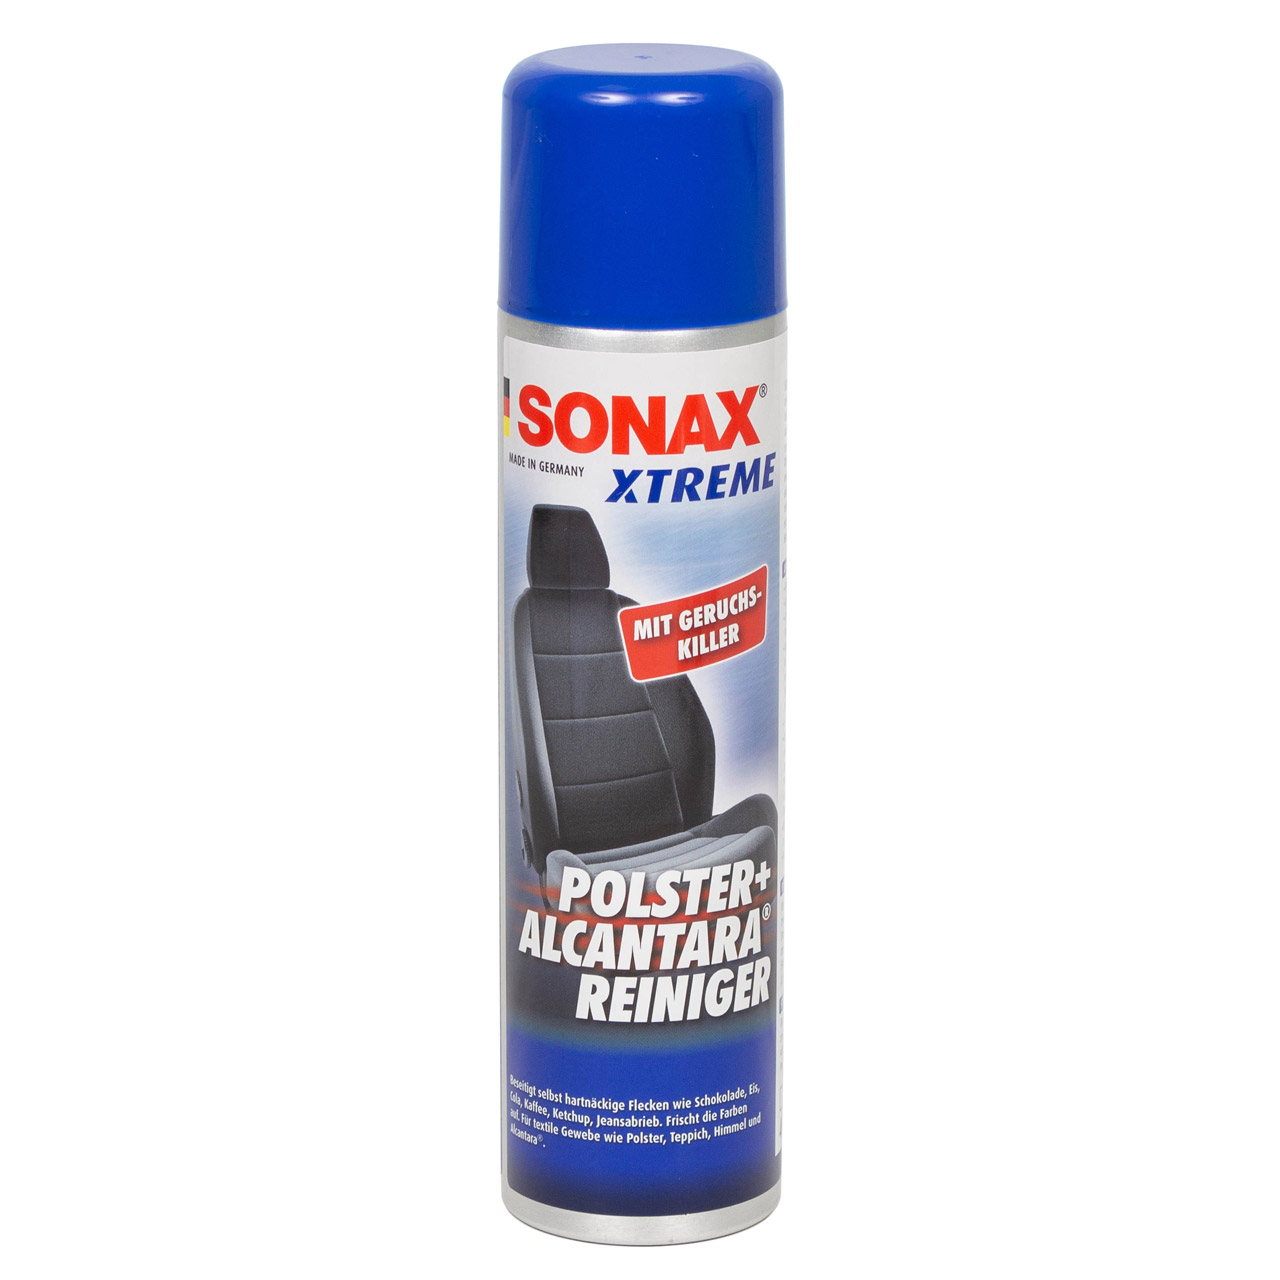 SONAX Xtreme Polster- & AlcantaraReiniger Geruchskiller Reiniger 400ml 206300